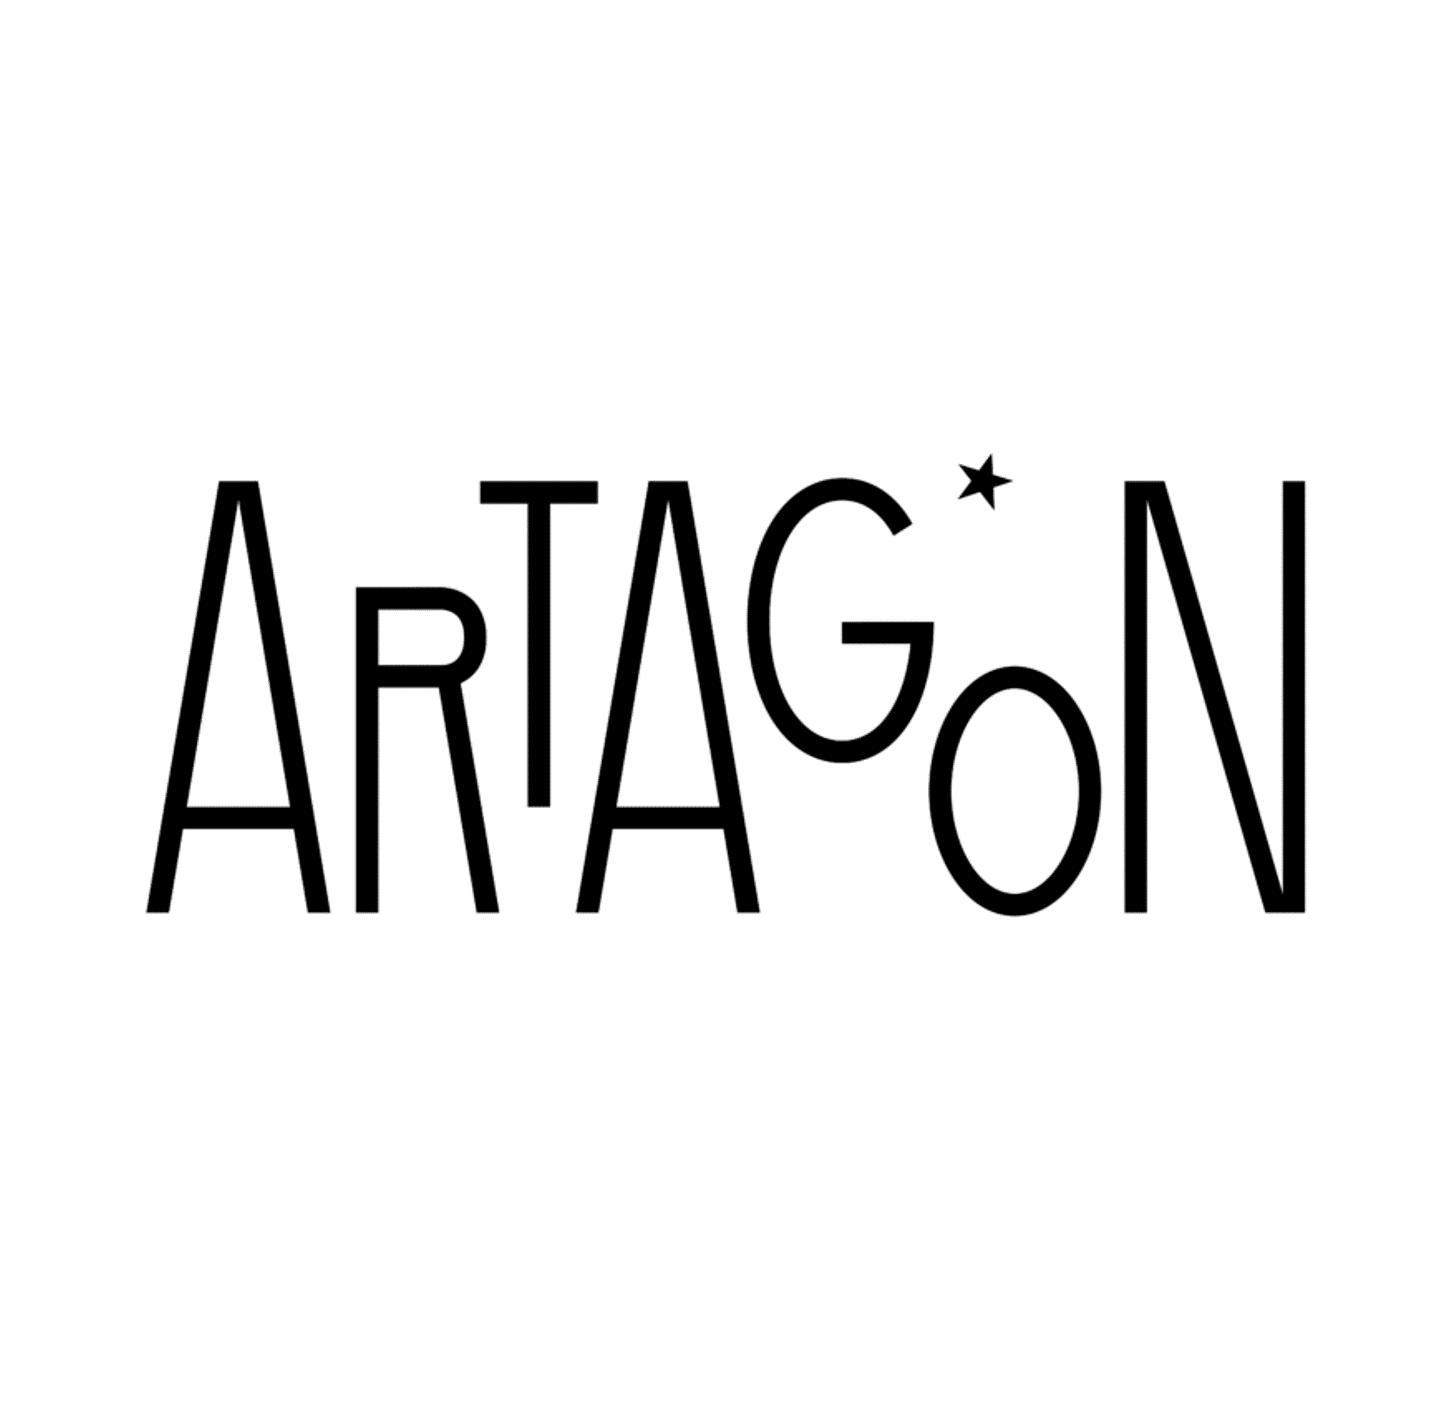 ARTAGON